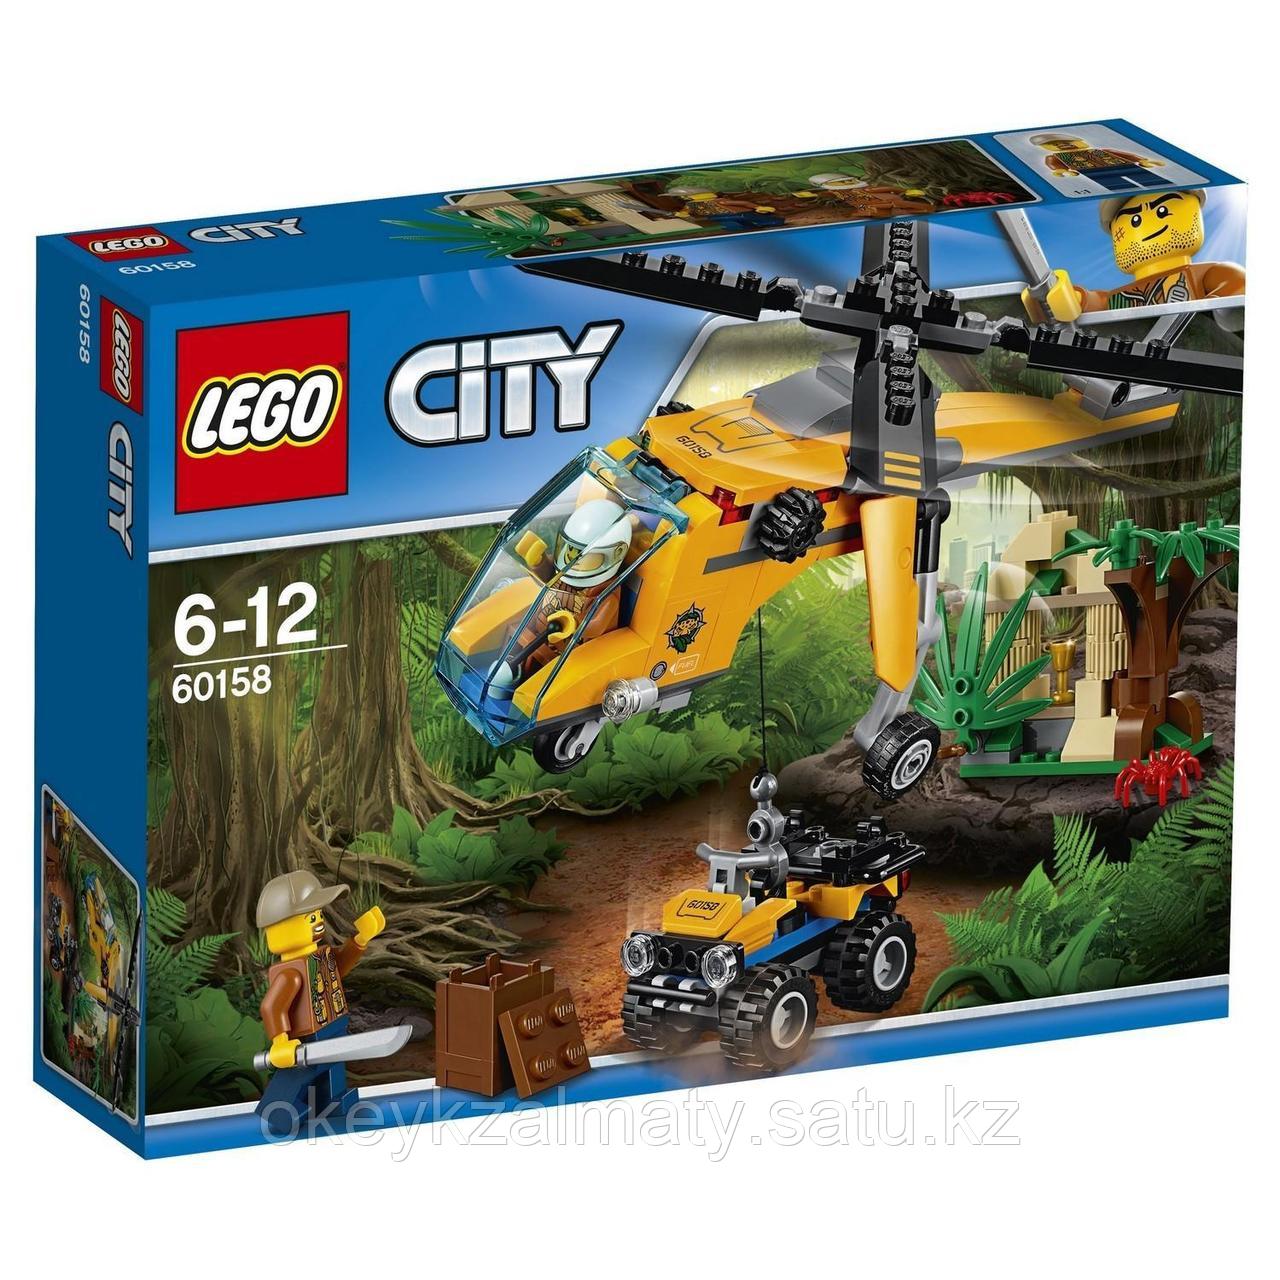 LEGO City: Грузовой вертолёт исследователей джунглей 60158